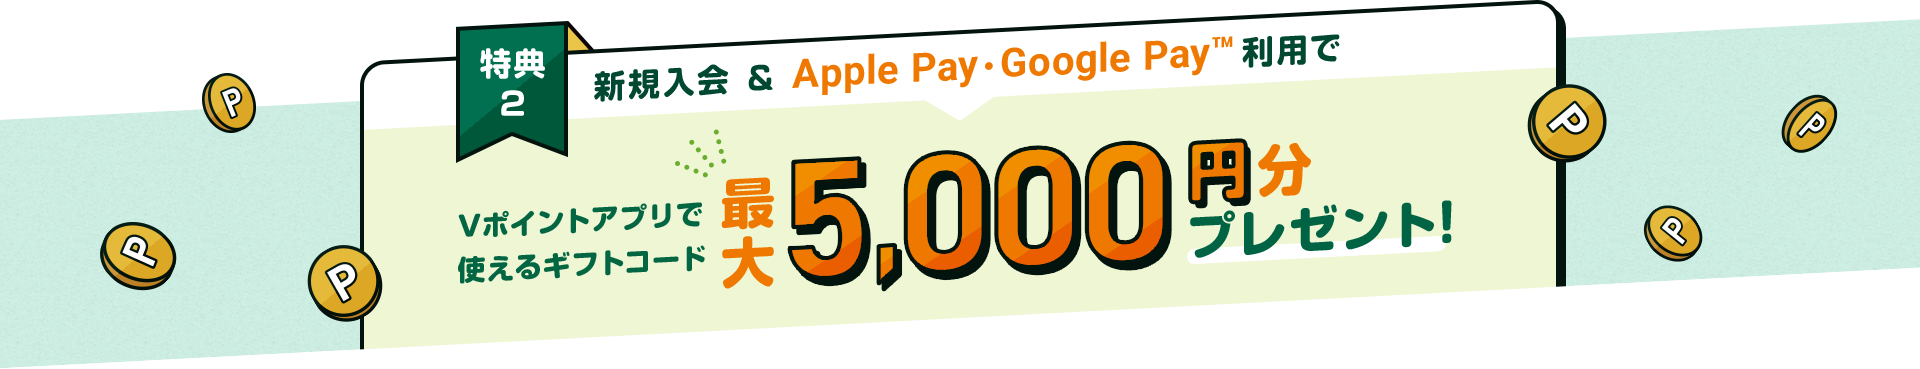 特典2 新規入会&Apple Pay・Google PayTM利用でＶポイントアプリで使えるギフトコード最大5,000円分プレゼント！